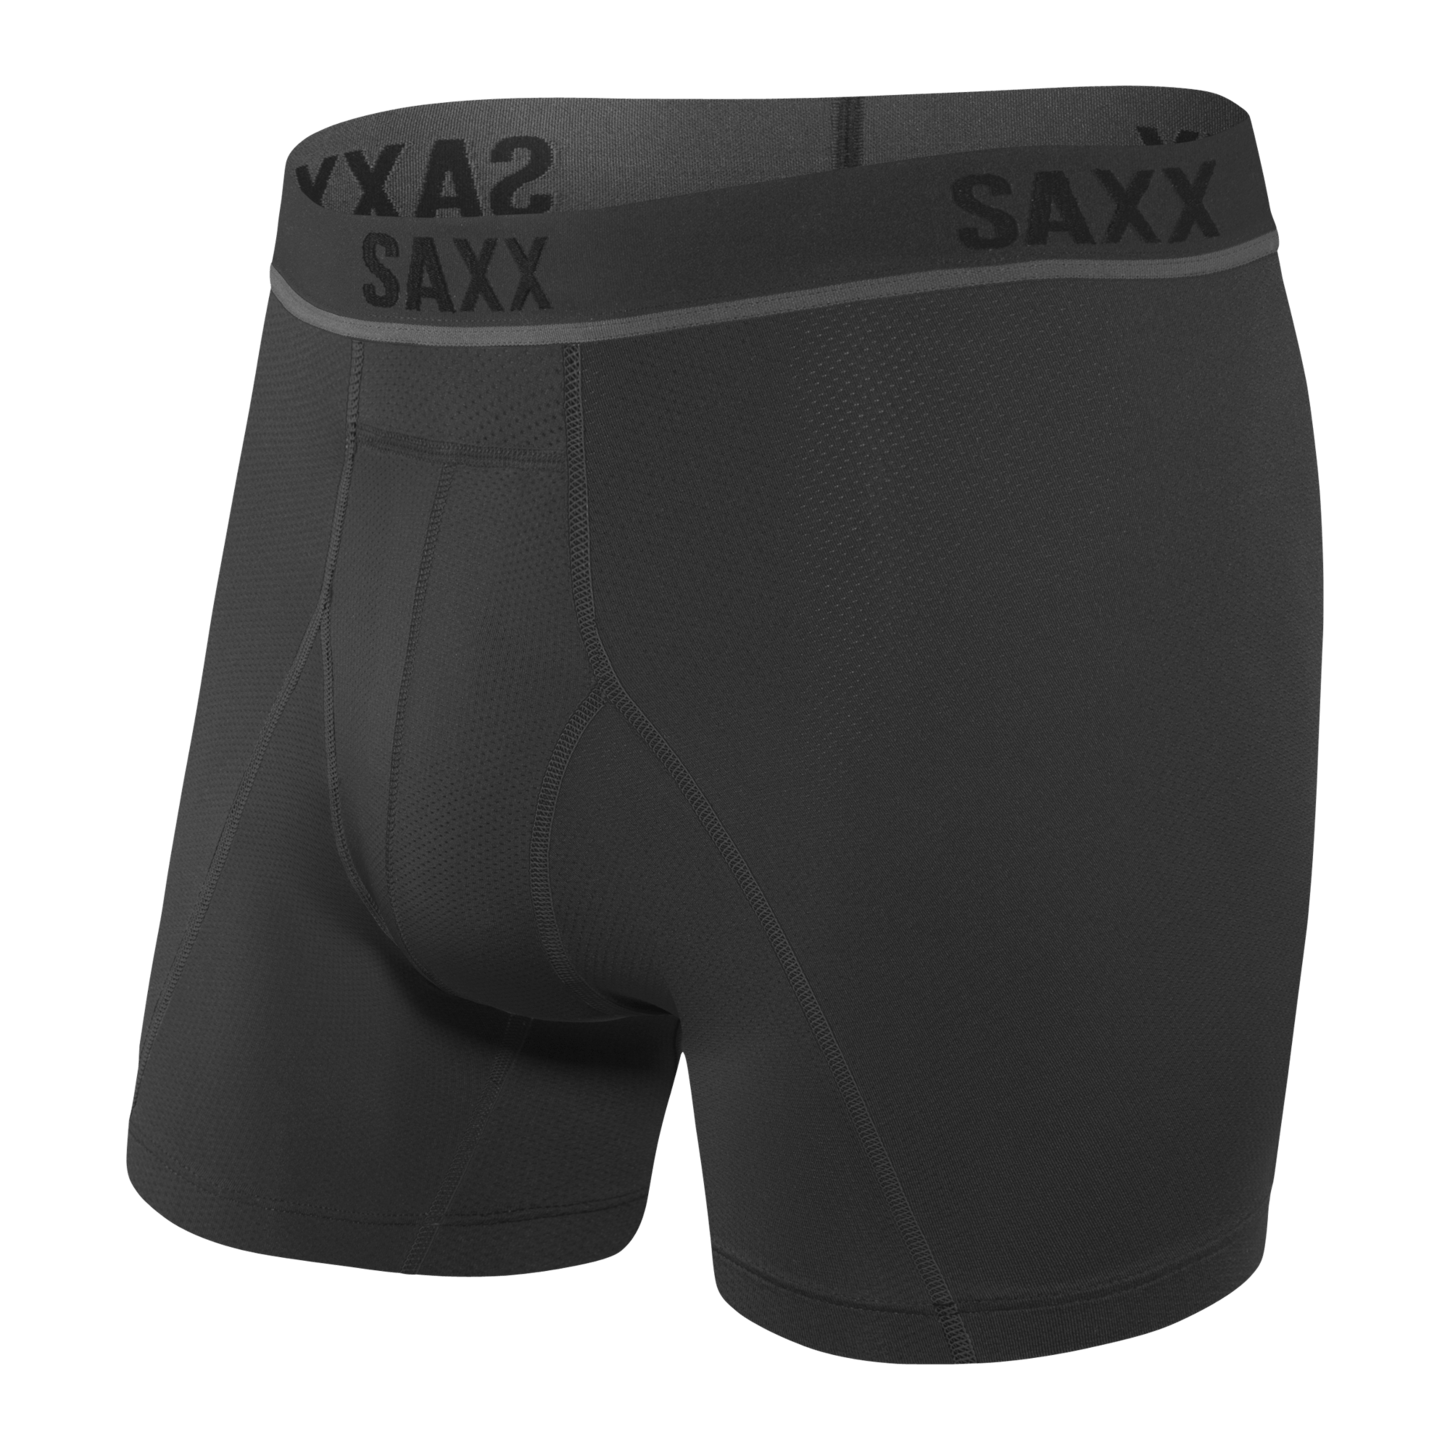 SAXX Kinetic HD Boxer Brief Underwear Blackout Men's Underwear Saxx 